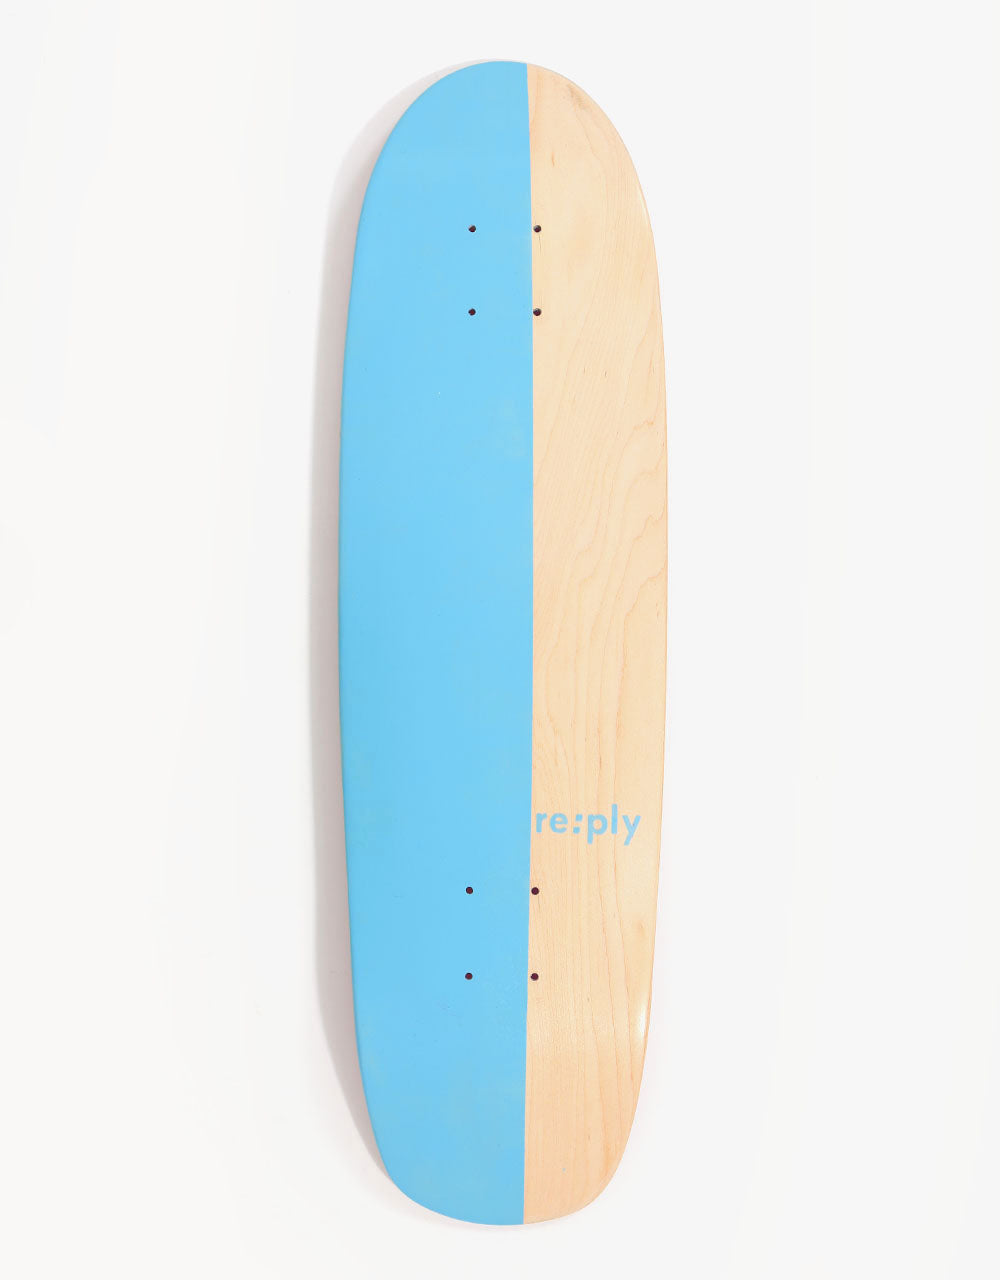 re:ply Elder Skateboard Deck - 7.5" x 29.5"